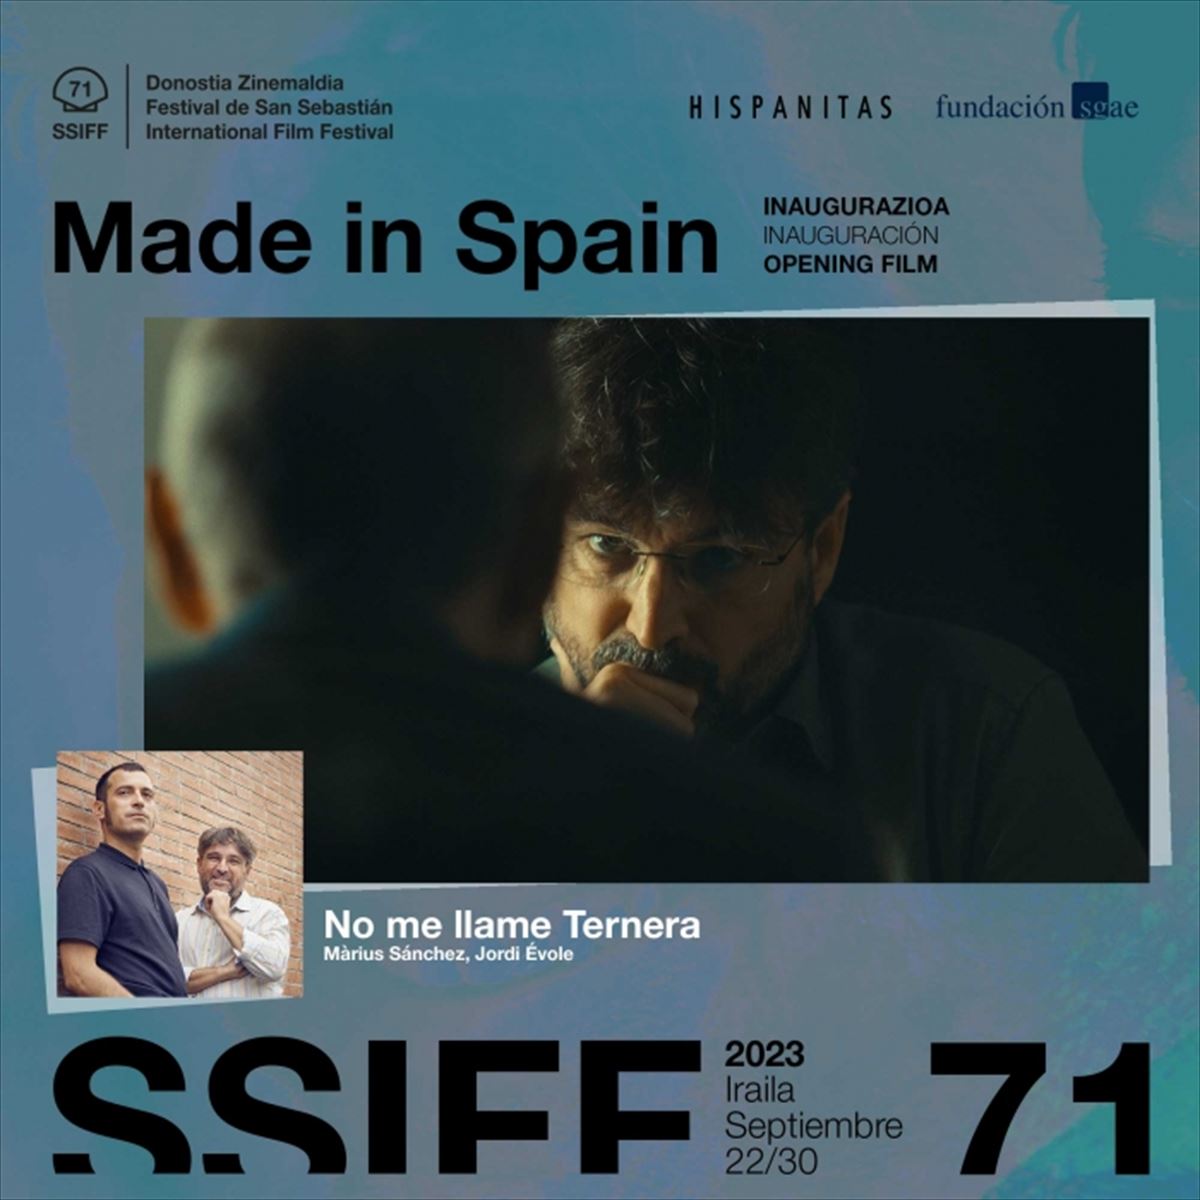 Cartel anunciador del film de Jordi Évole. 